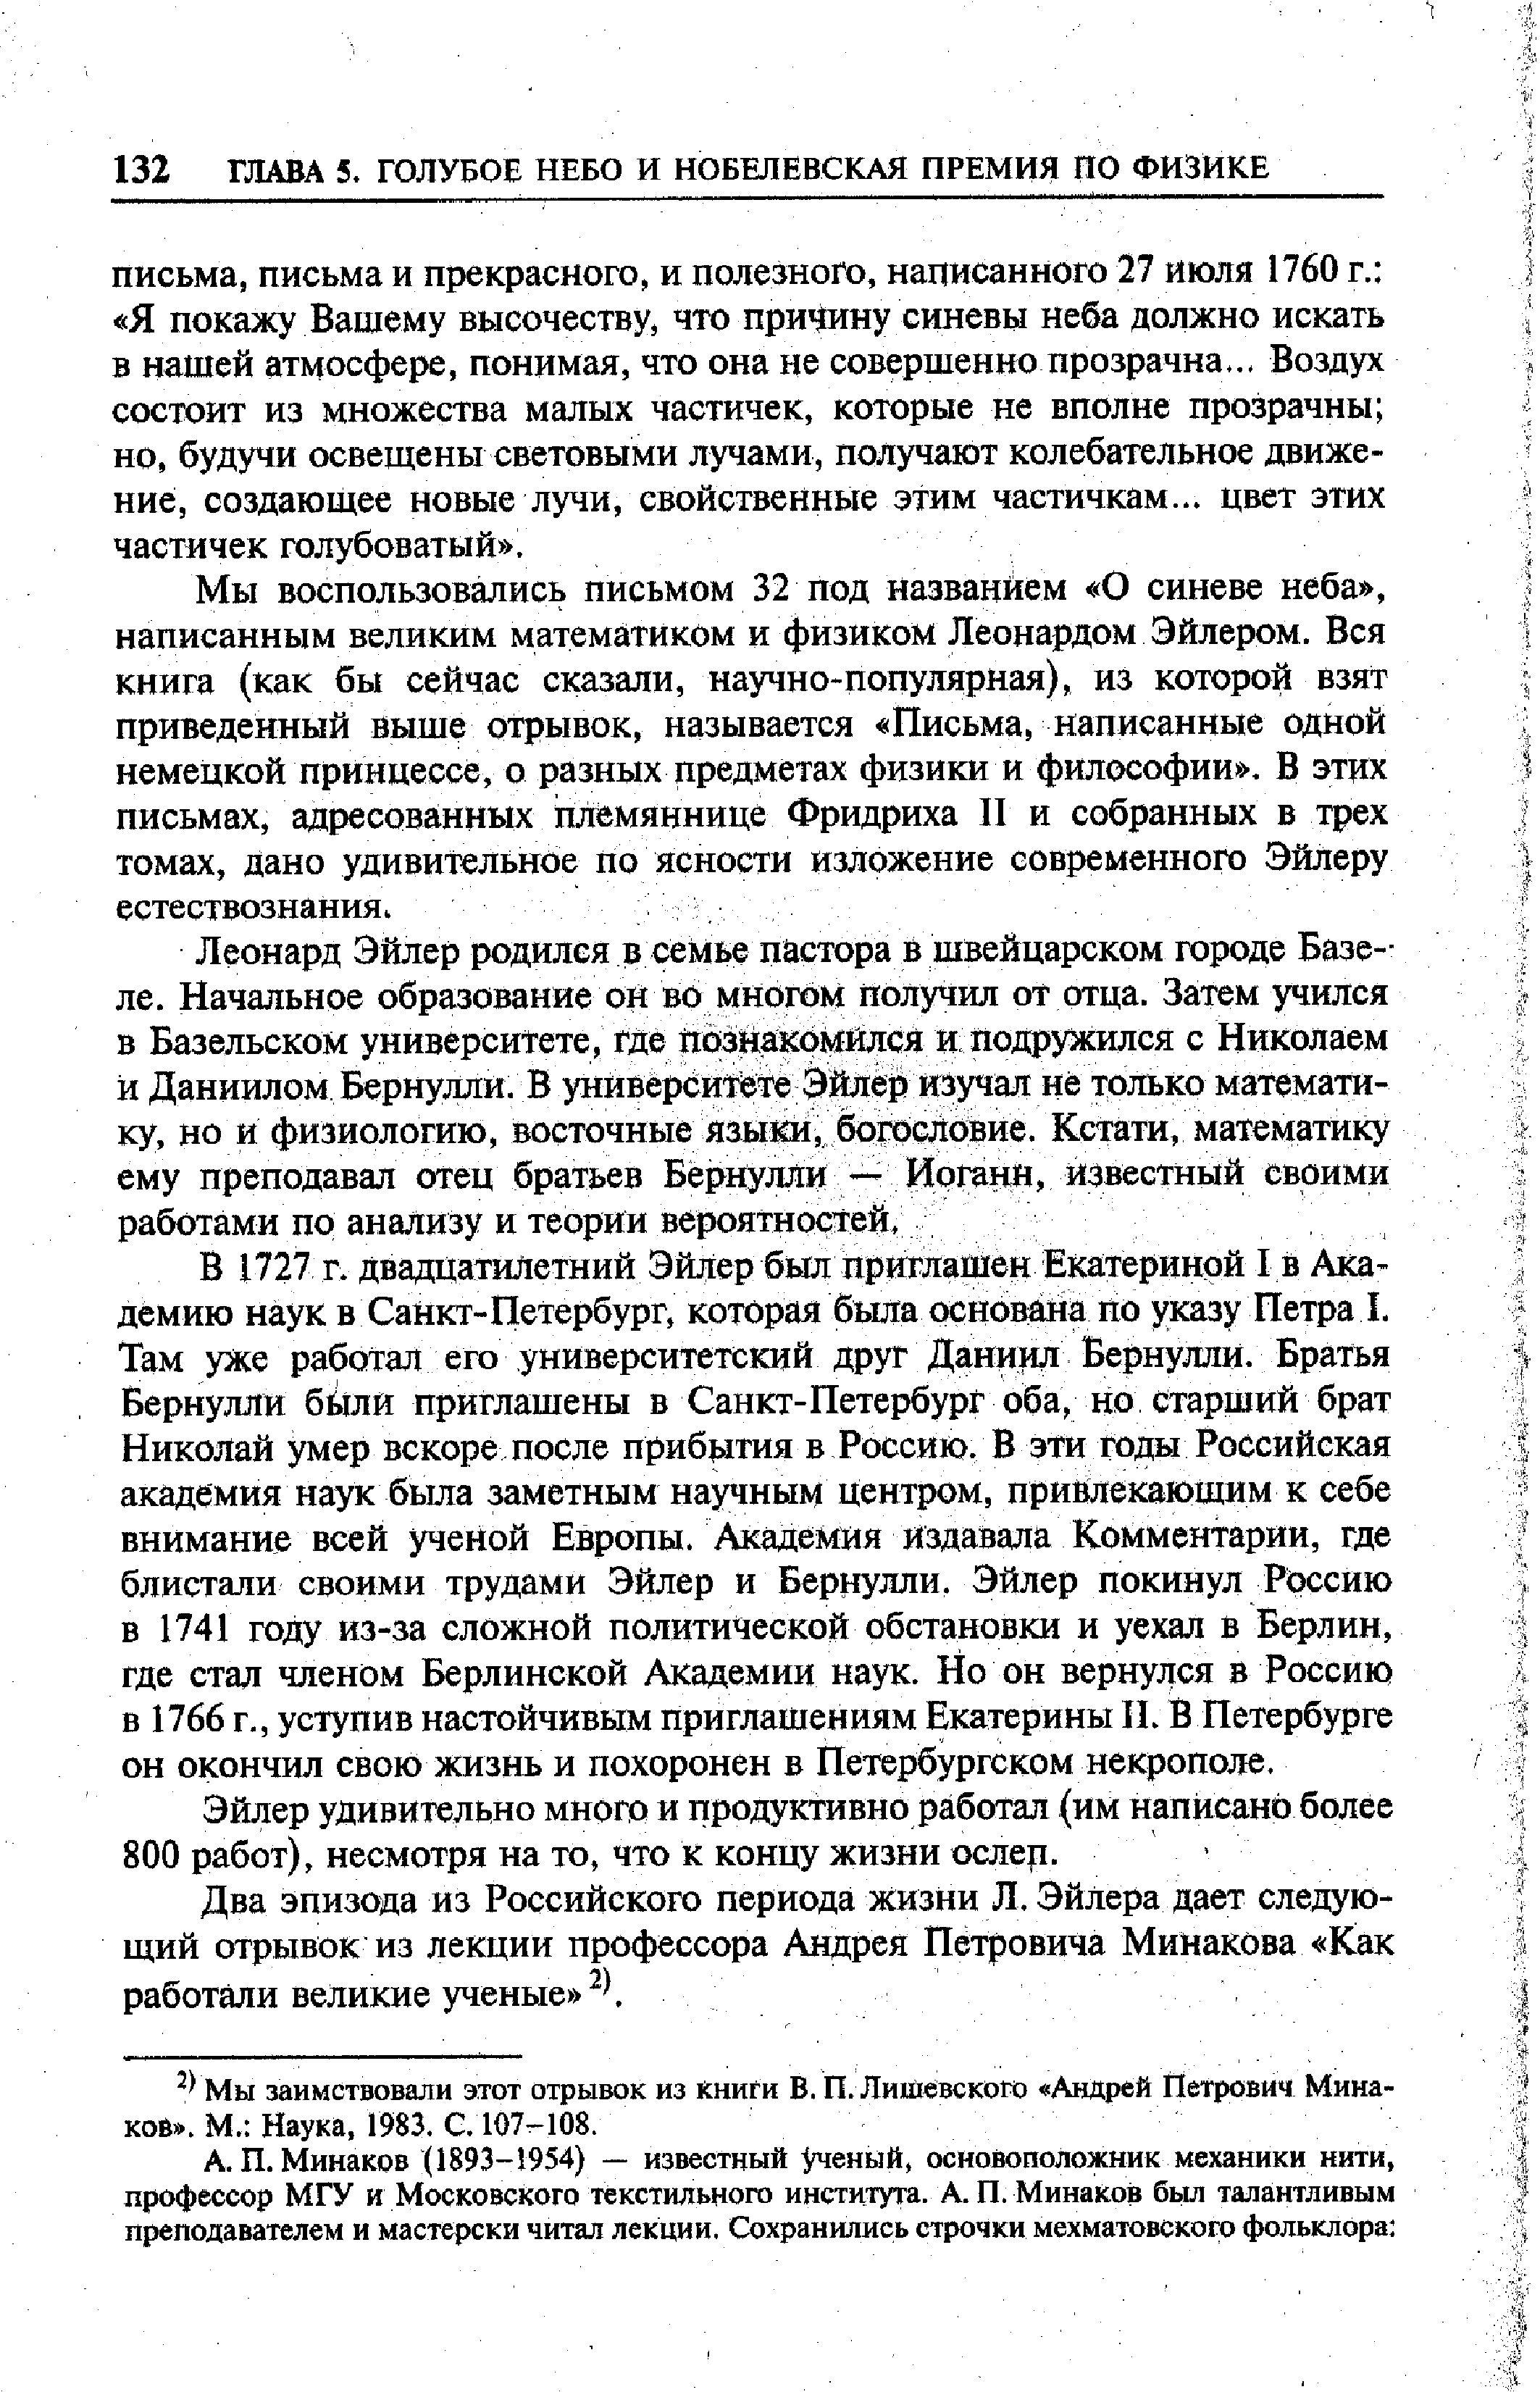 Мы заимствовали этот отрывок из книги В. П. Лишевскою Андрей Петрович Мина-ков. М. Наука, 1983. С. 107-108.
